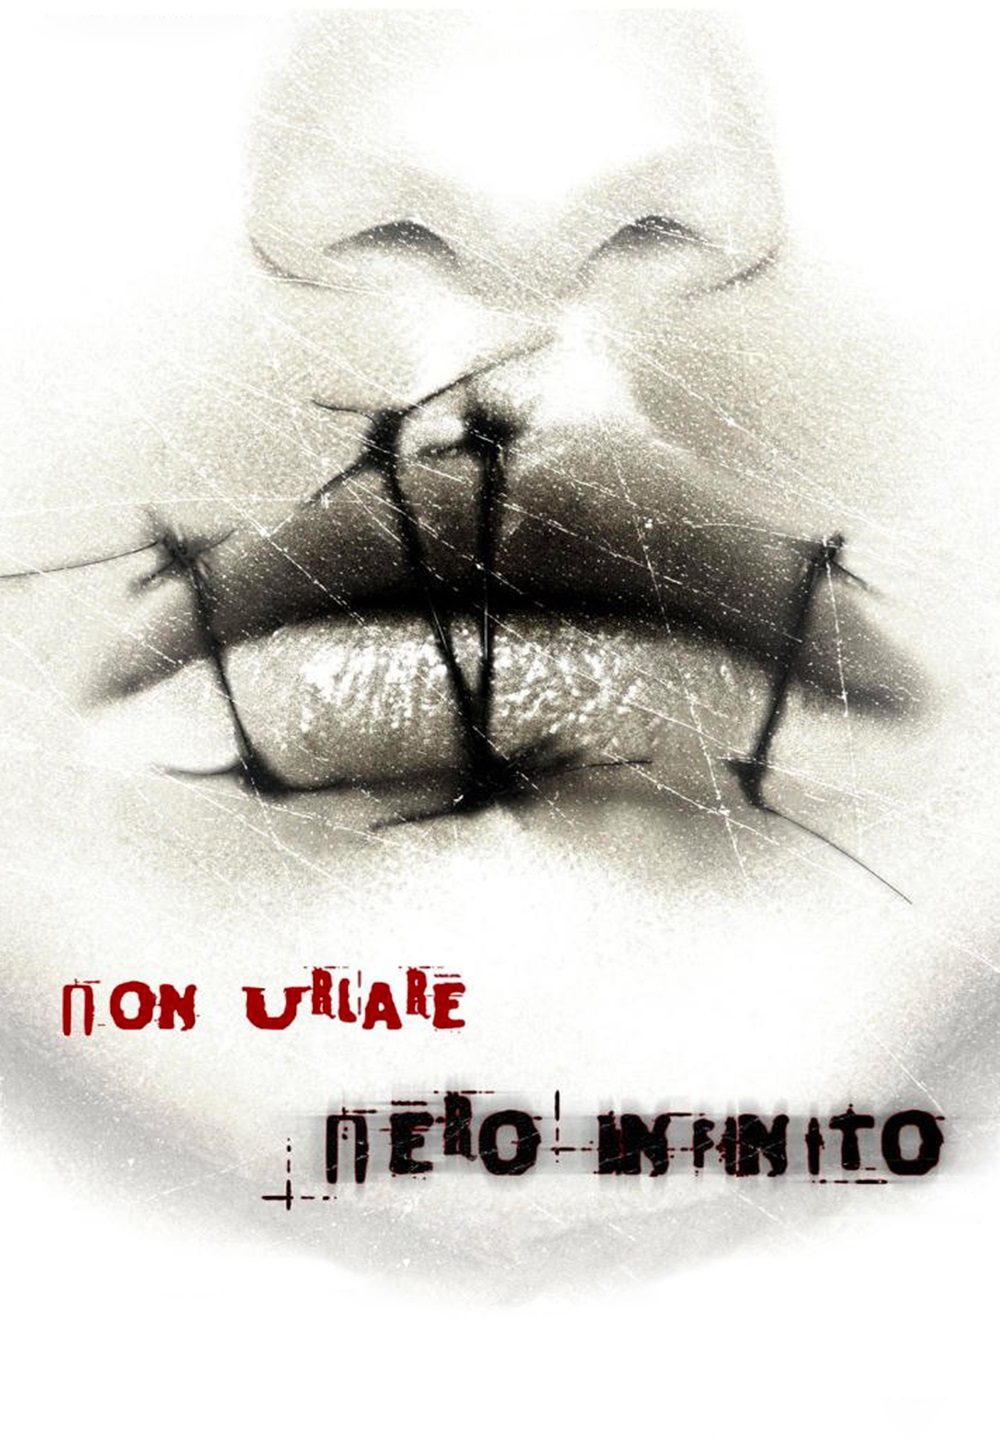 Nero infinito (2013)